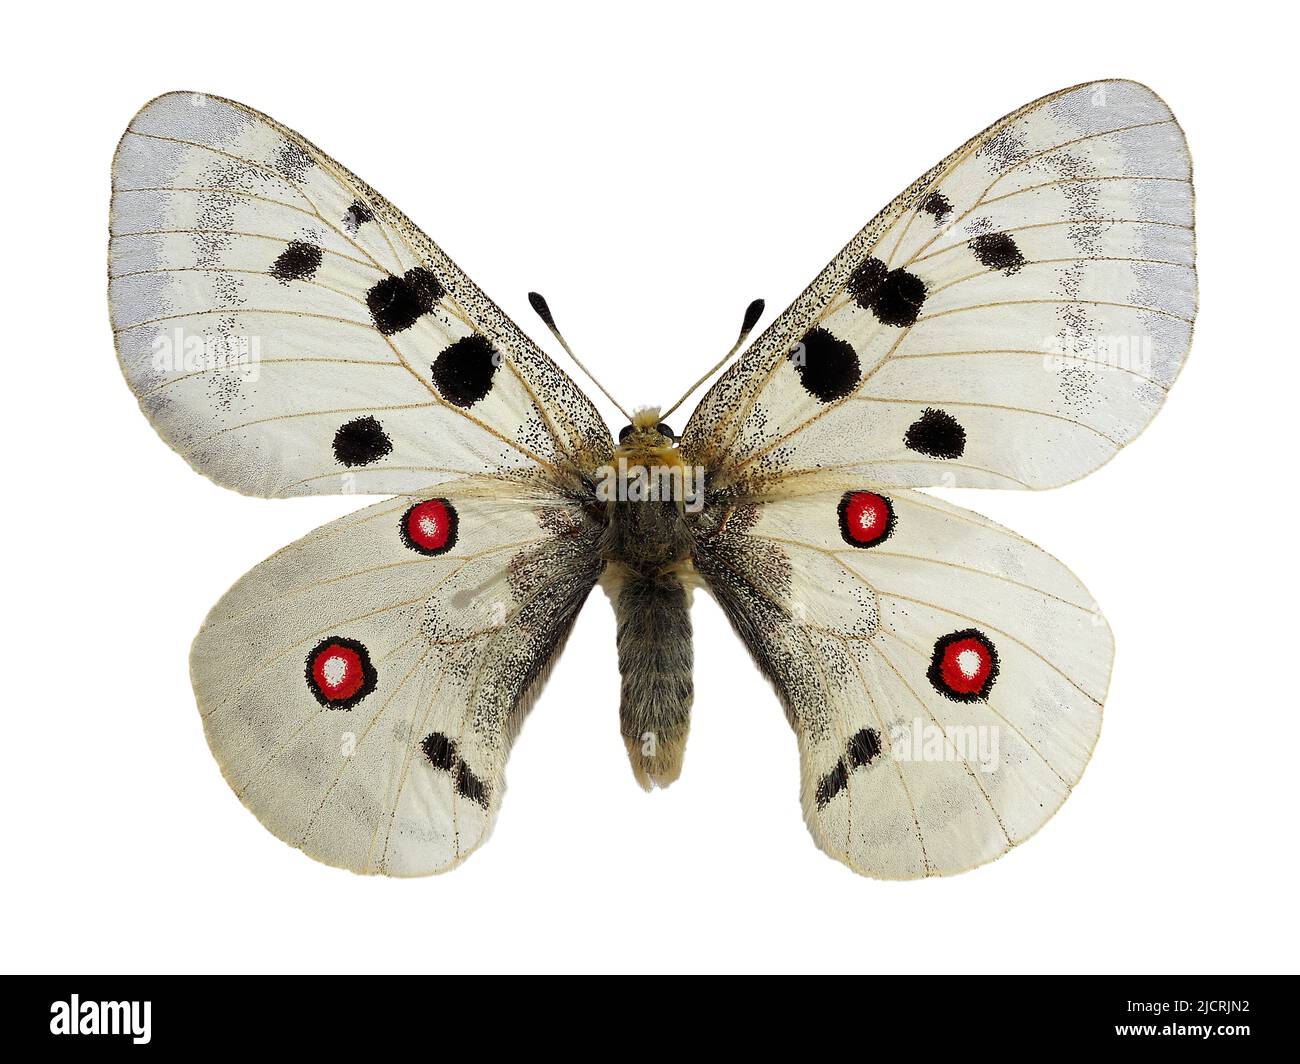 Apollo butterfly (Parnassius apollo) living in mountainous areas, isolated on white background Stock Photo